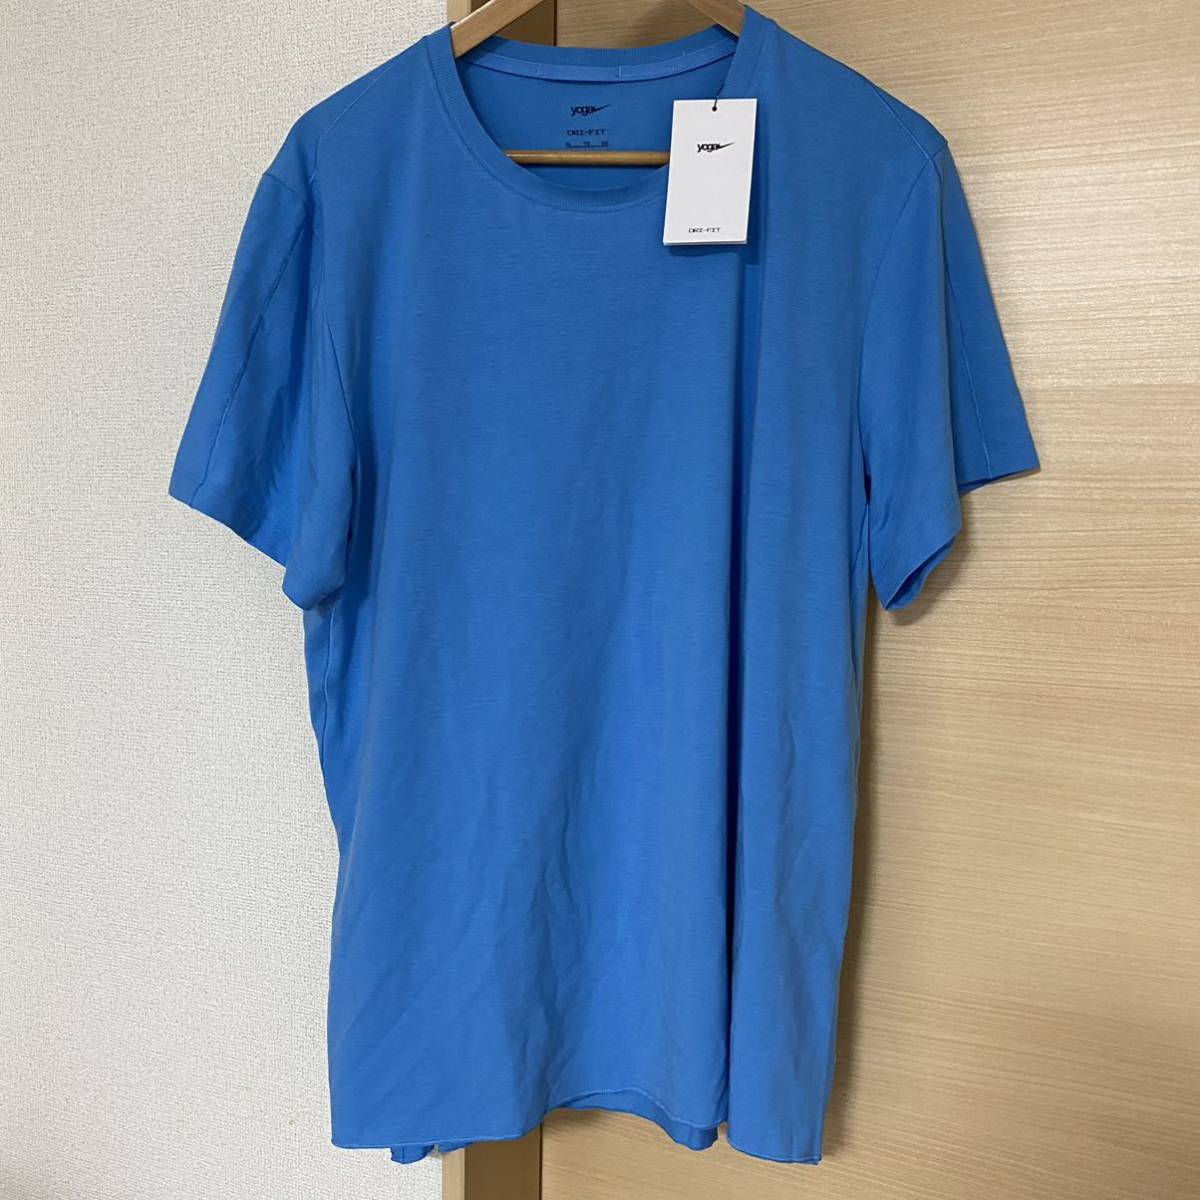 新品 NIKE yoga メンズ シャツ 半袖 Tシャツ DM7826 XLサイズ ナイキ Dri-FIT ヨガ ショートスリーブ 送料無料 送料込